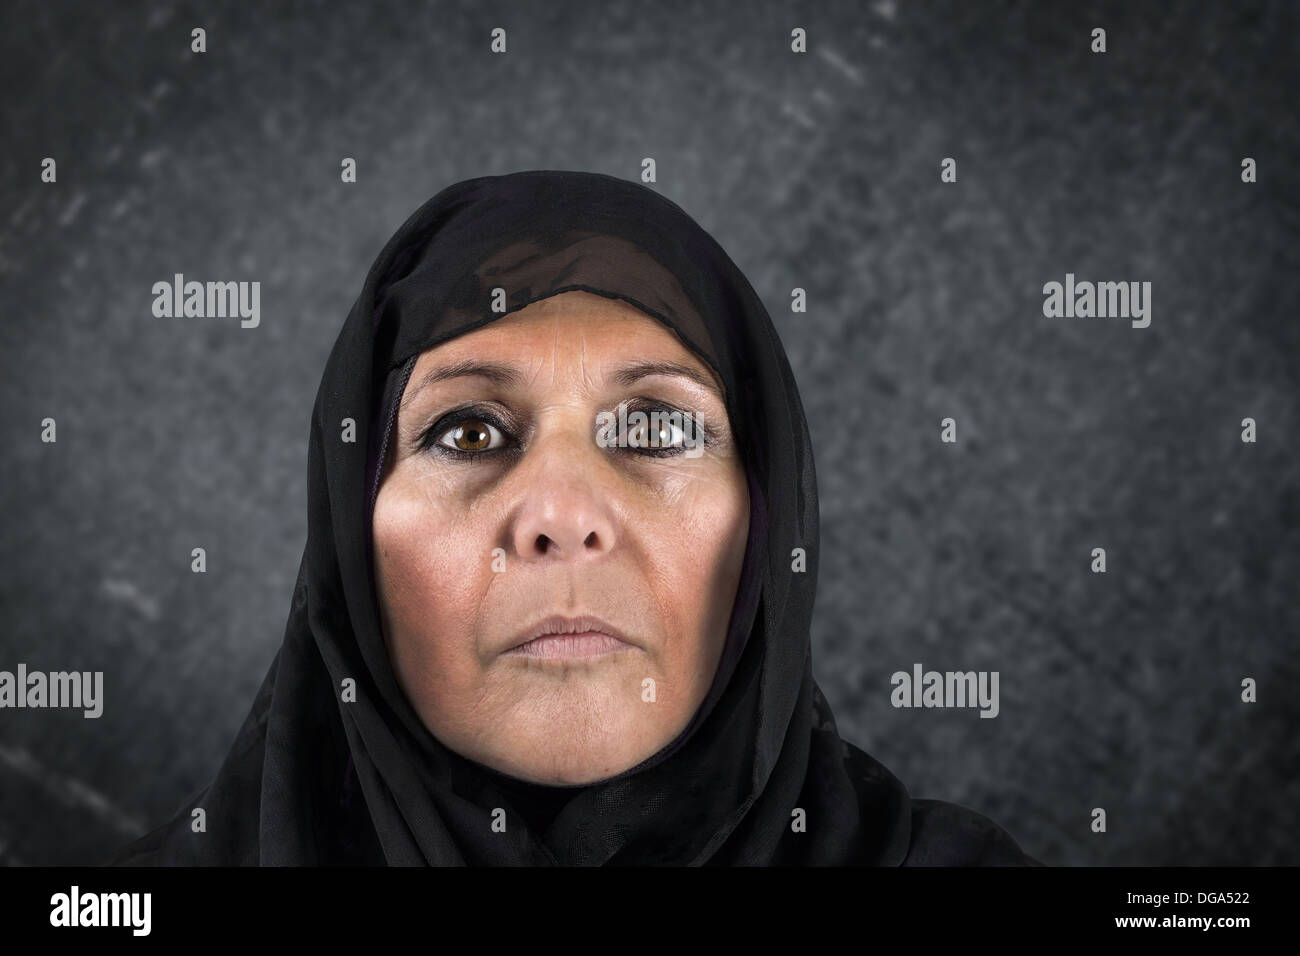 Dramatische Porträt von Ernst mittleren gealterten Muslimin mit schwarzen Schal oder hijab Stockfoto